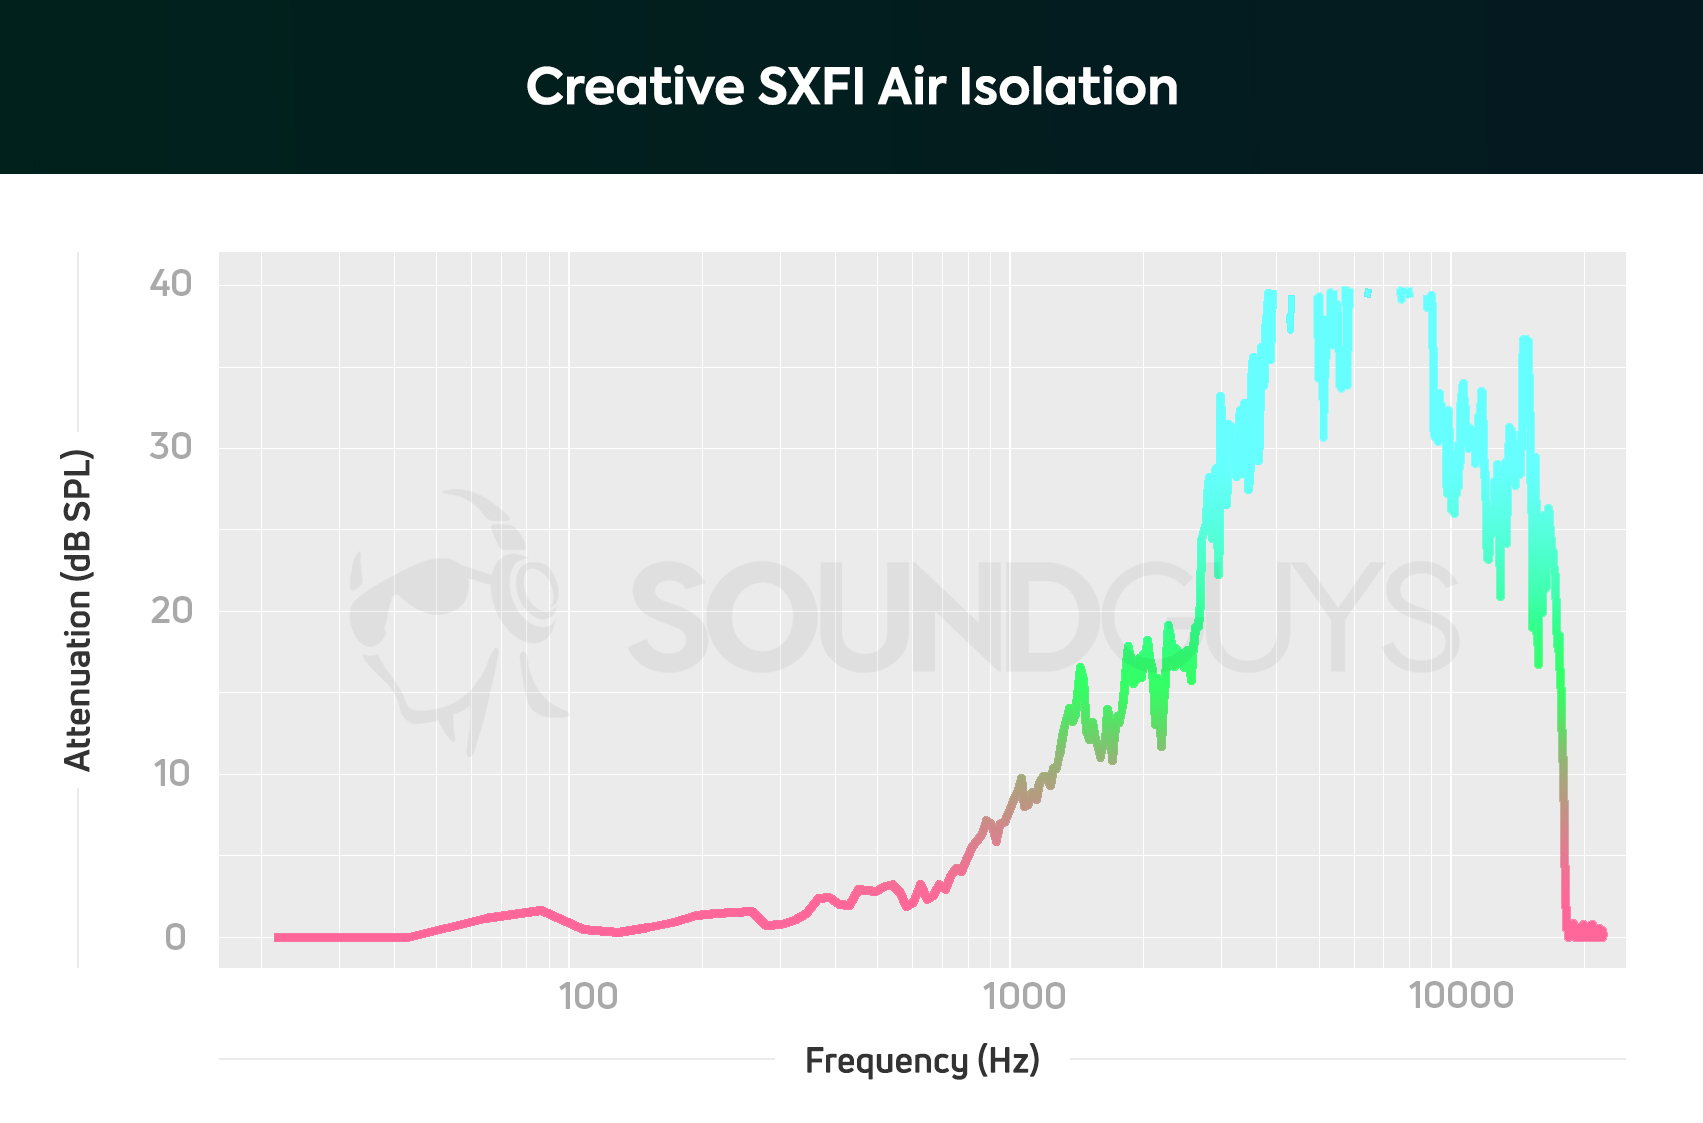 Creative SXFI Air isolation chart.